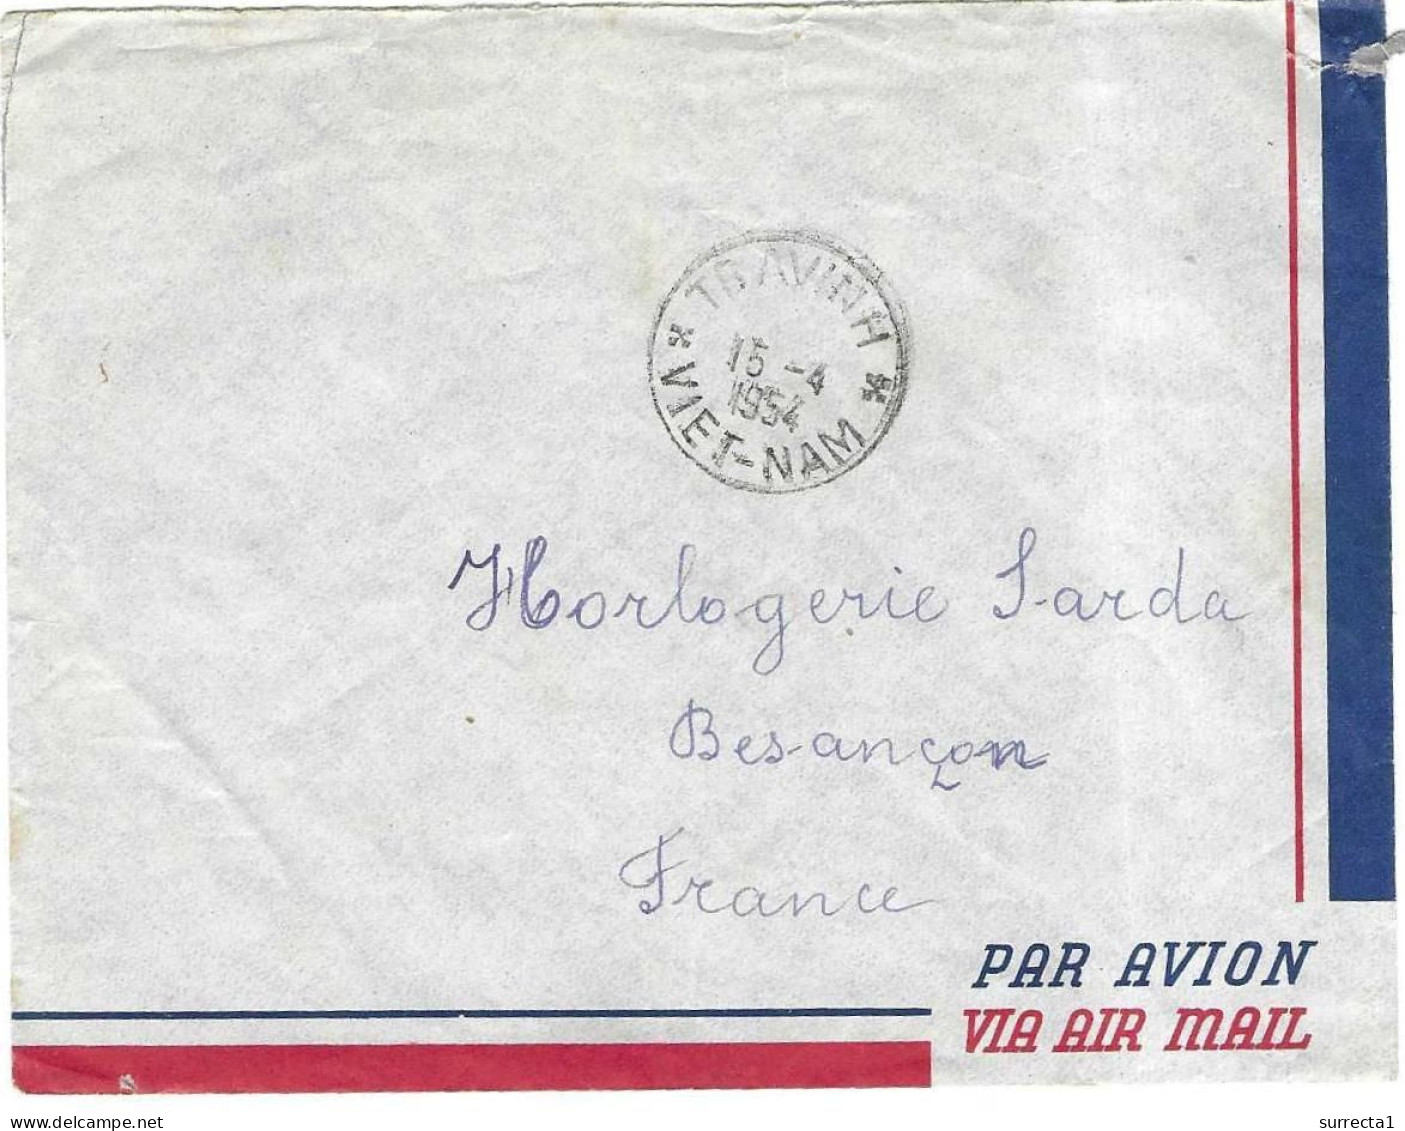 Enveloppe par avion via Air Mail cachet 2cole Française Hanoï Vietnam